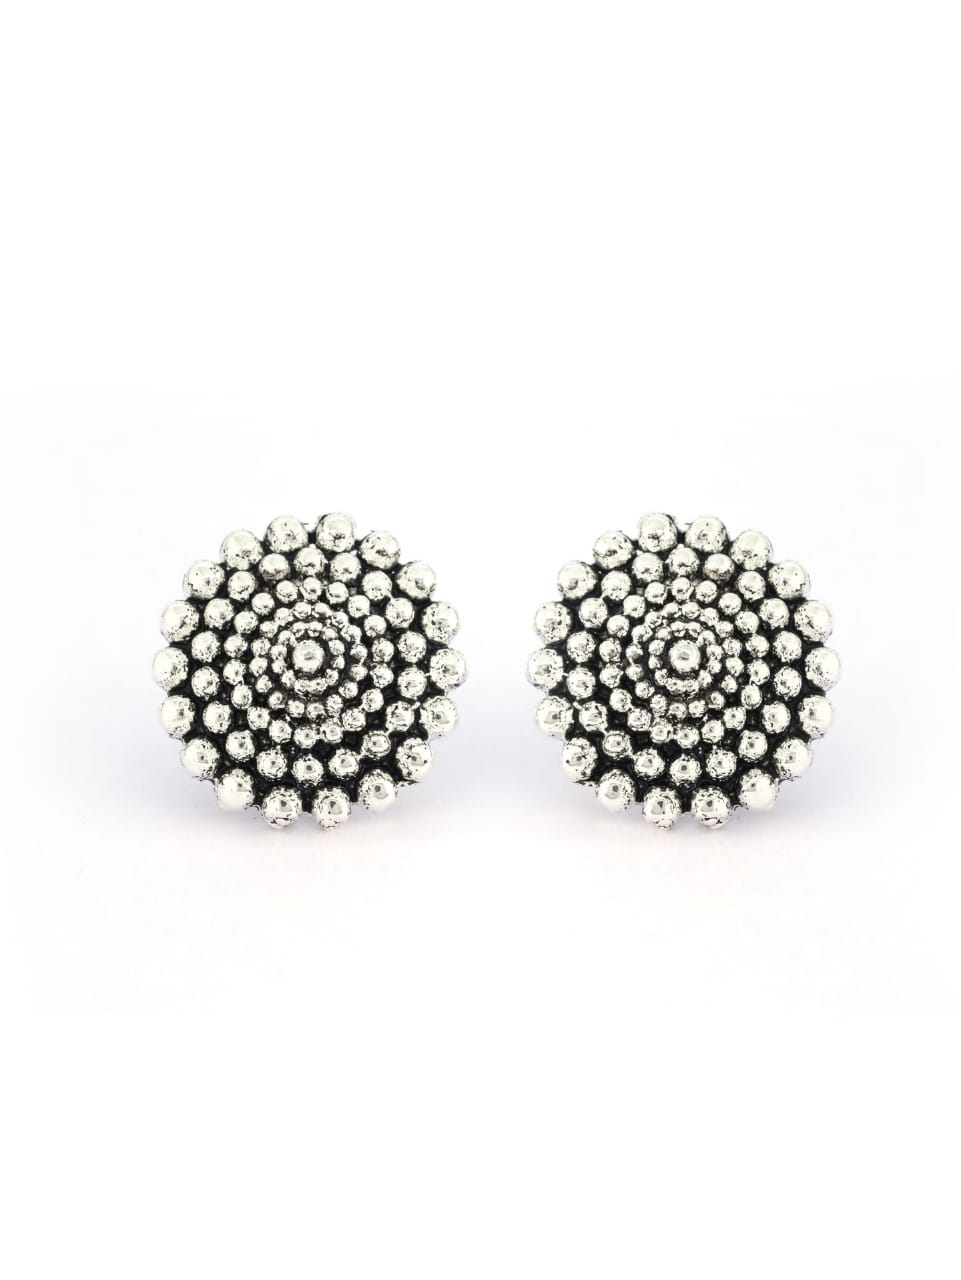 Sterlin   Designer Silver  Earrings  Tops for Women and Girls